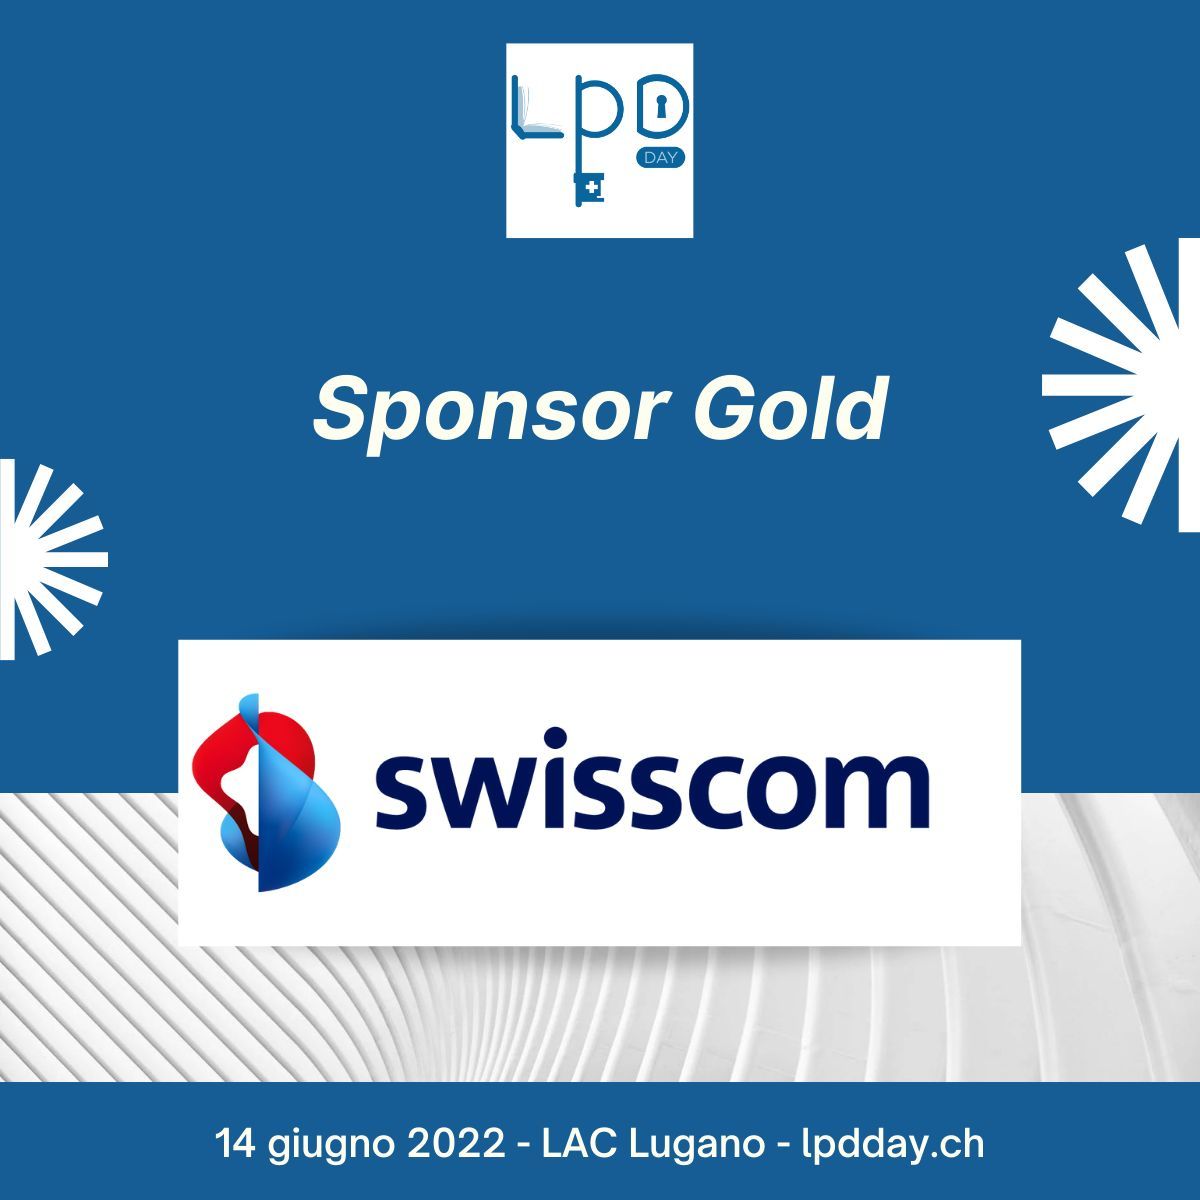 Anúncio da Swisscom como "Gold Sponsor" do primeiro LPD Day